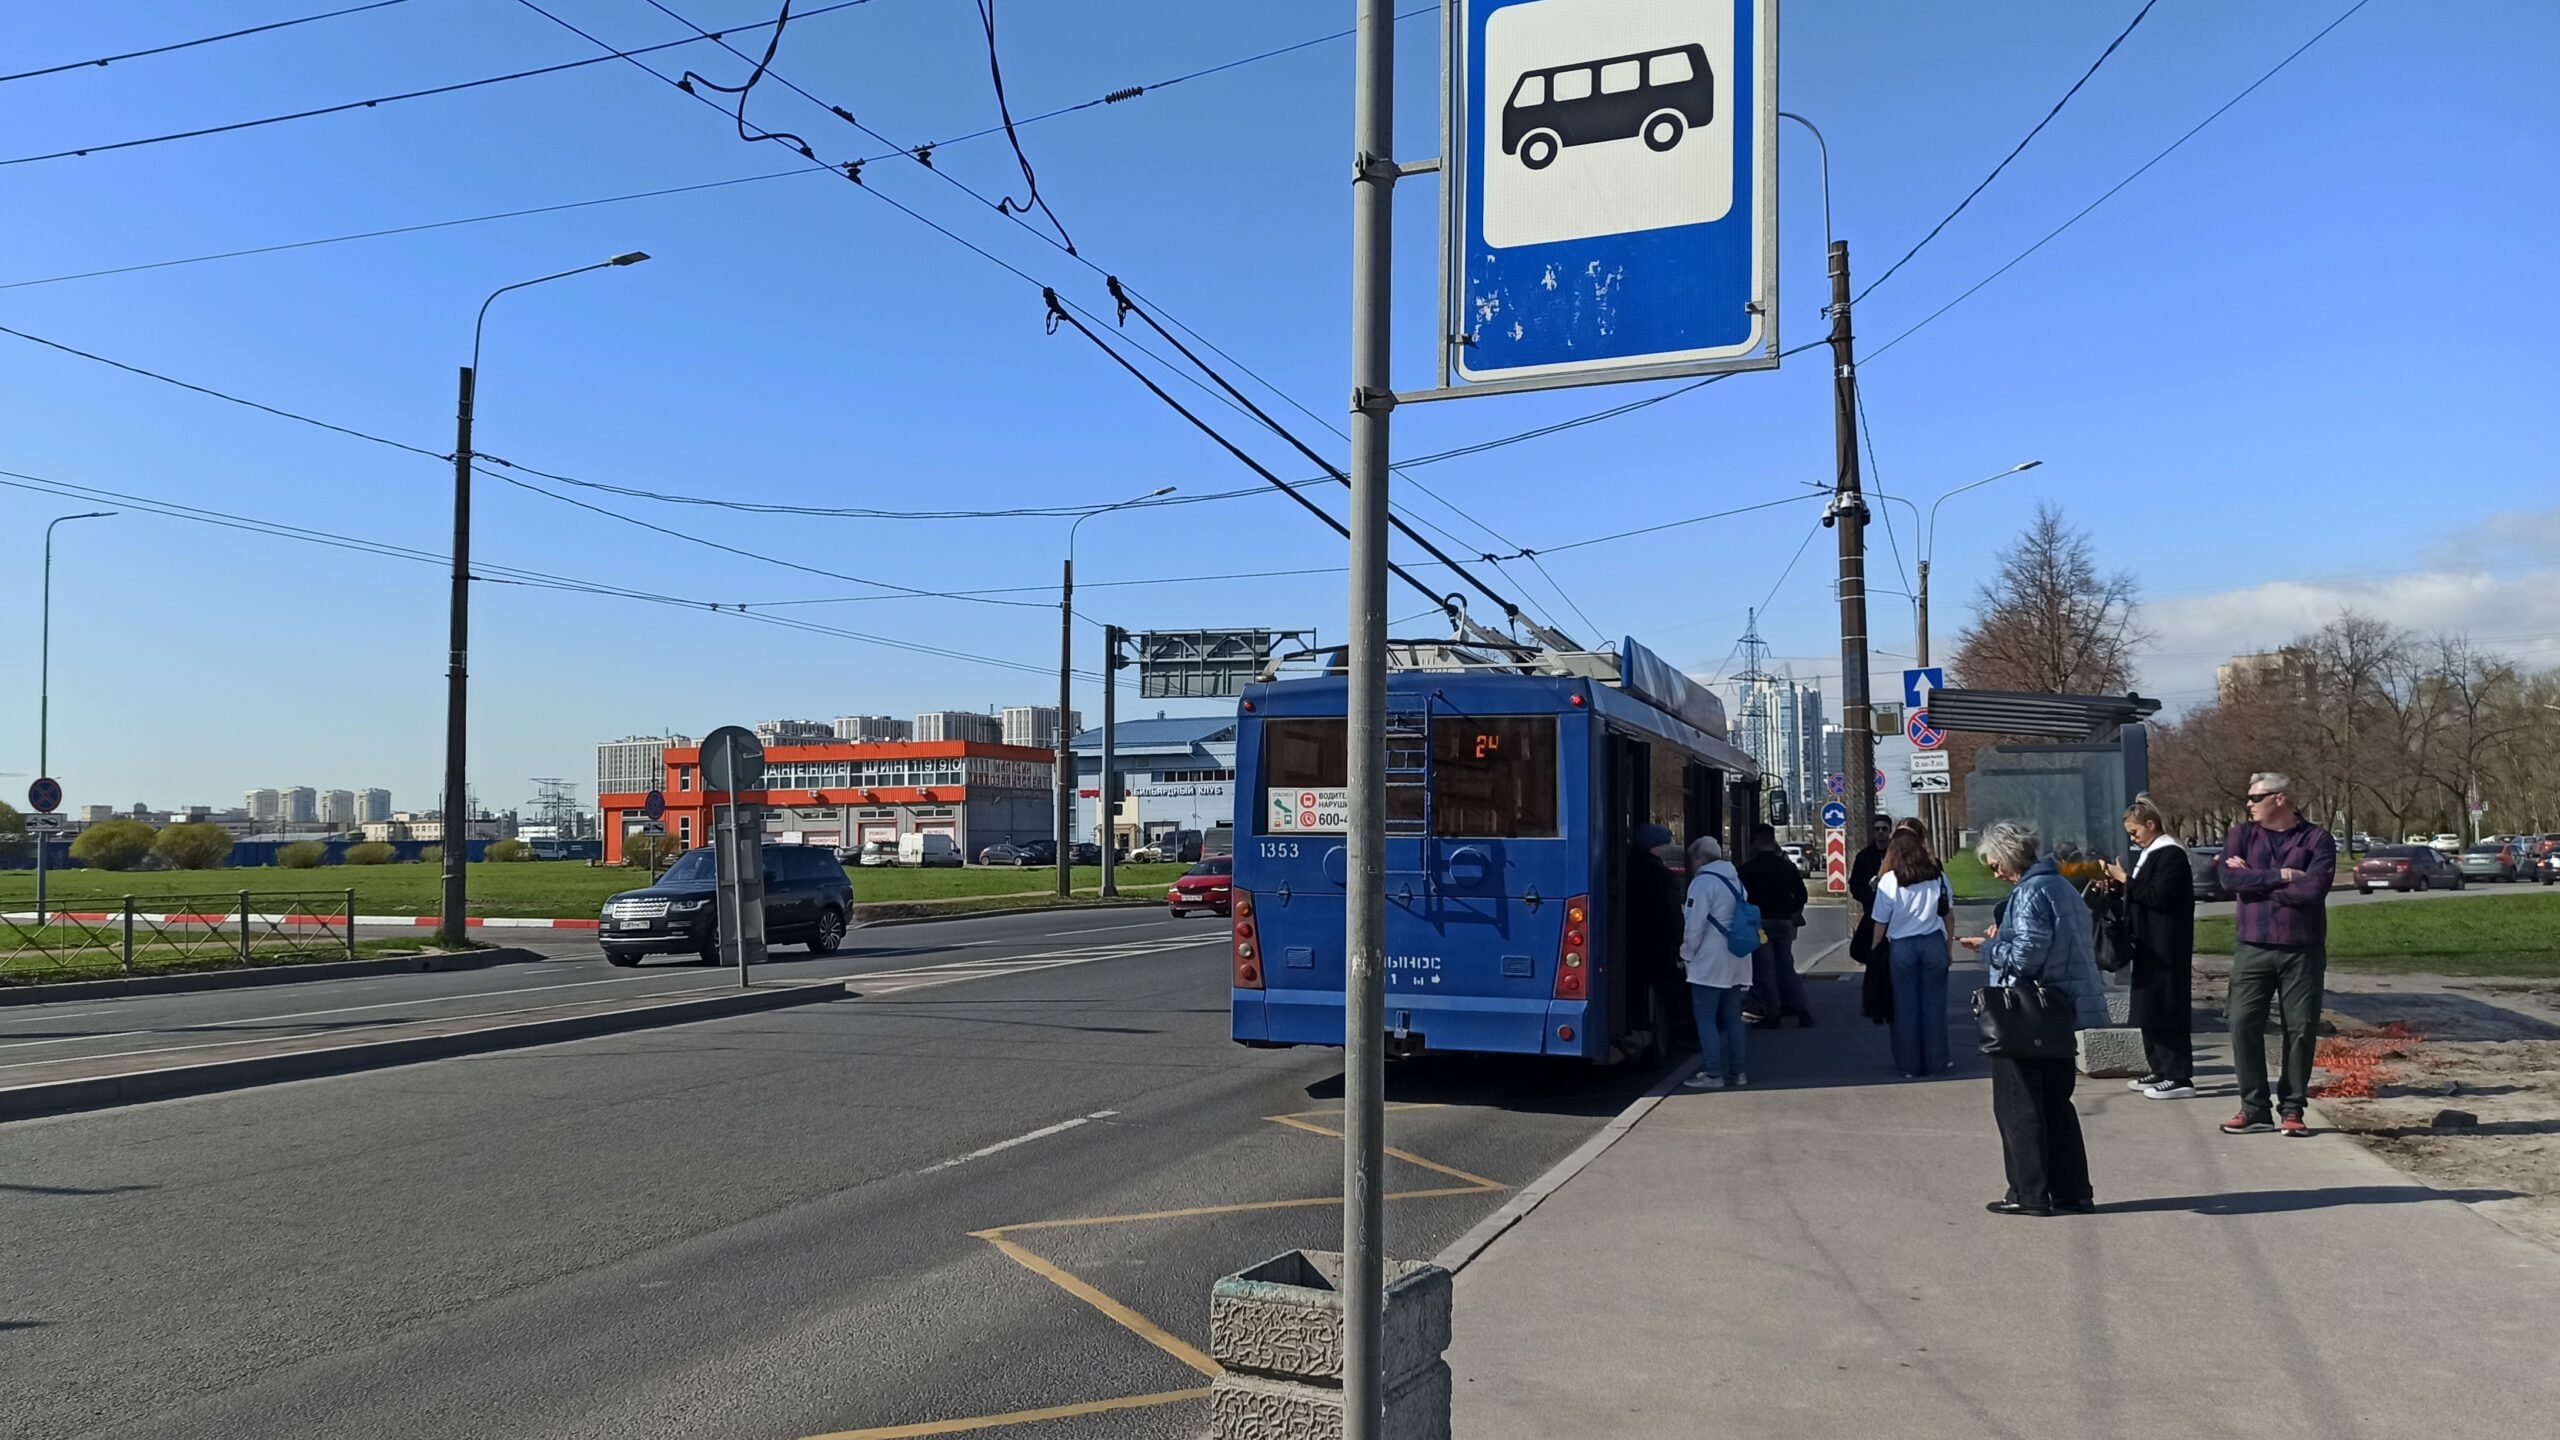 В Петербурге до конца ноября появятся 20 новых троллейбусов: цена вопроса — 715 млн